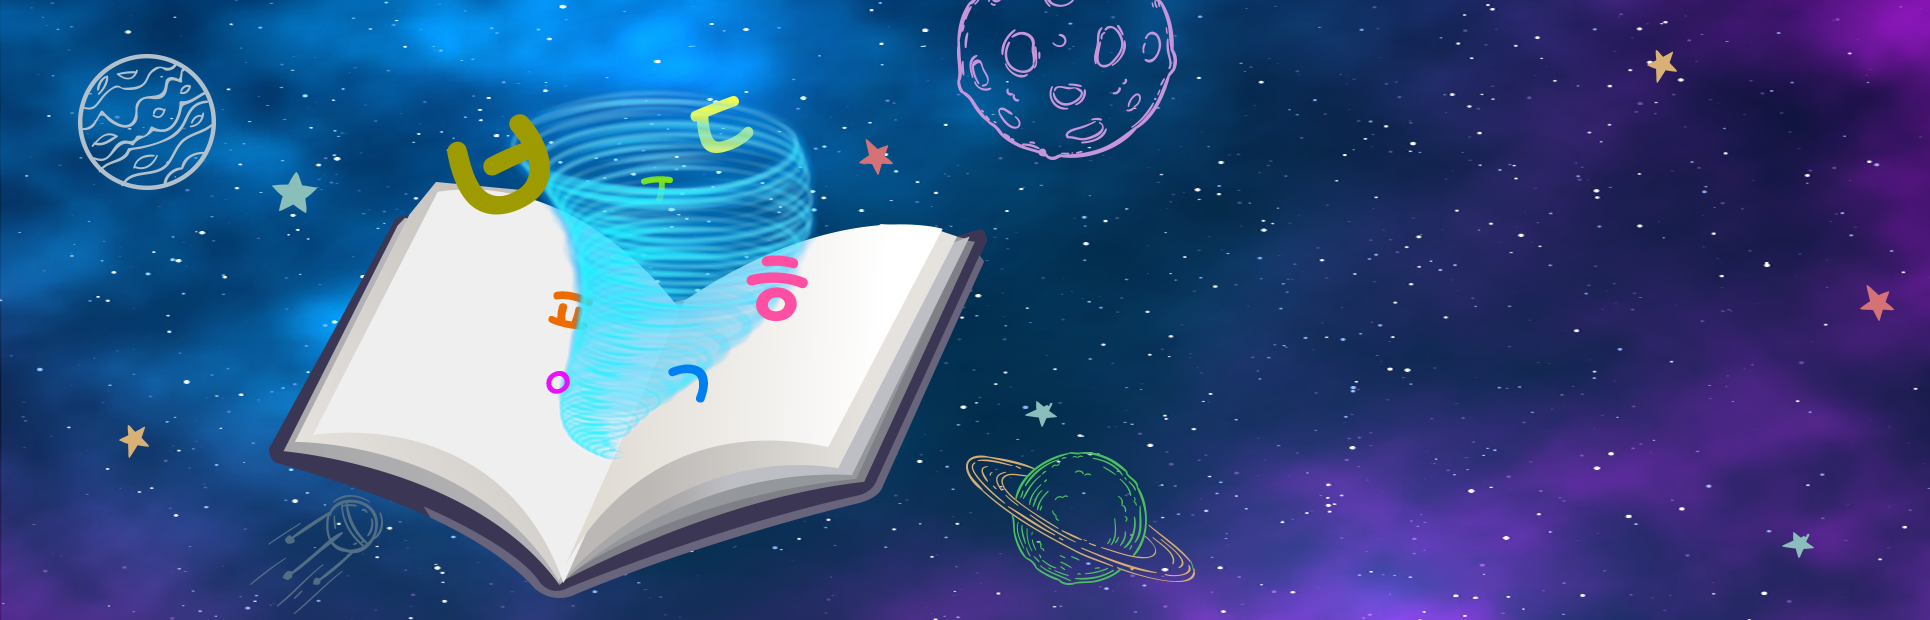 푸른색과 보라색이 섞인 우주에 행성들이 떠다니고 있다. 그 사이에 책이 한 권 펼쳐져 있으며 책에서 소용돌이가 치고 있다. 소용돌이 사이에는 한글 자음들이 떠다니고 있다.